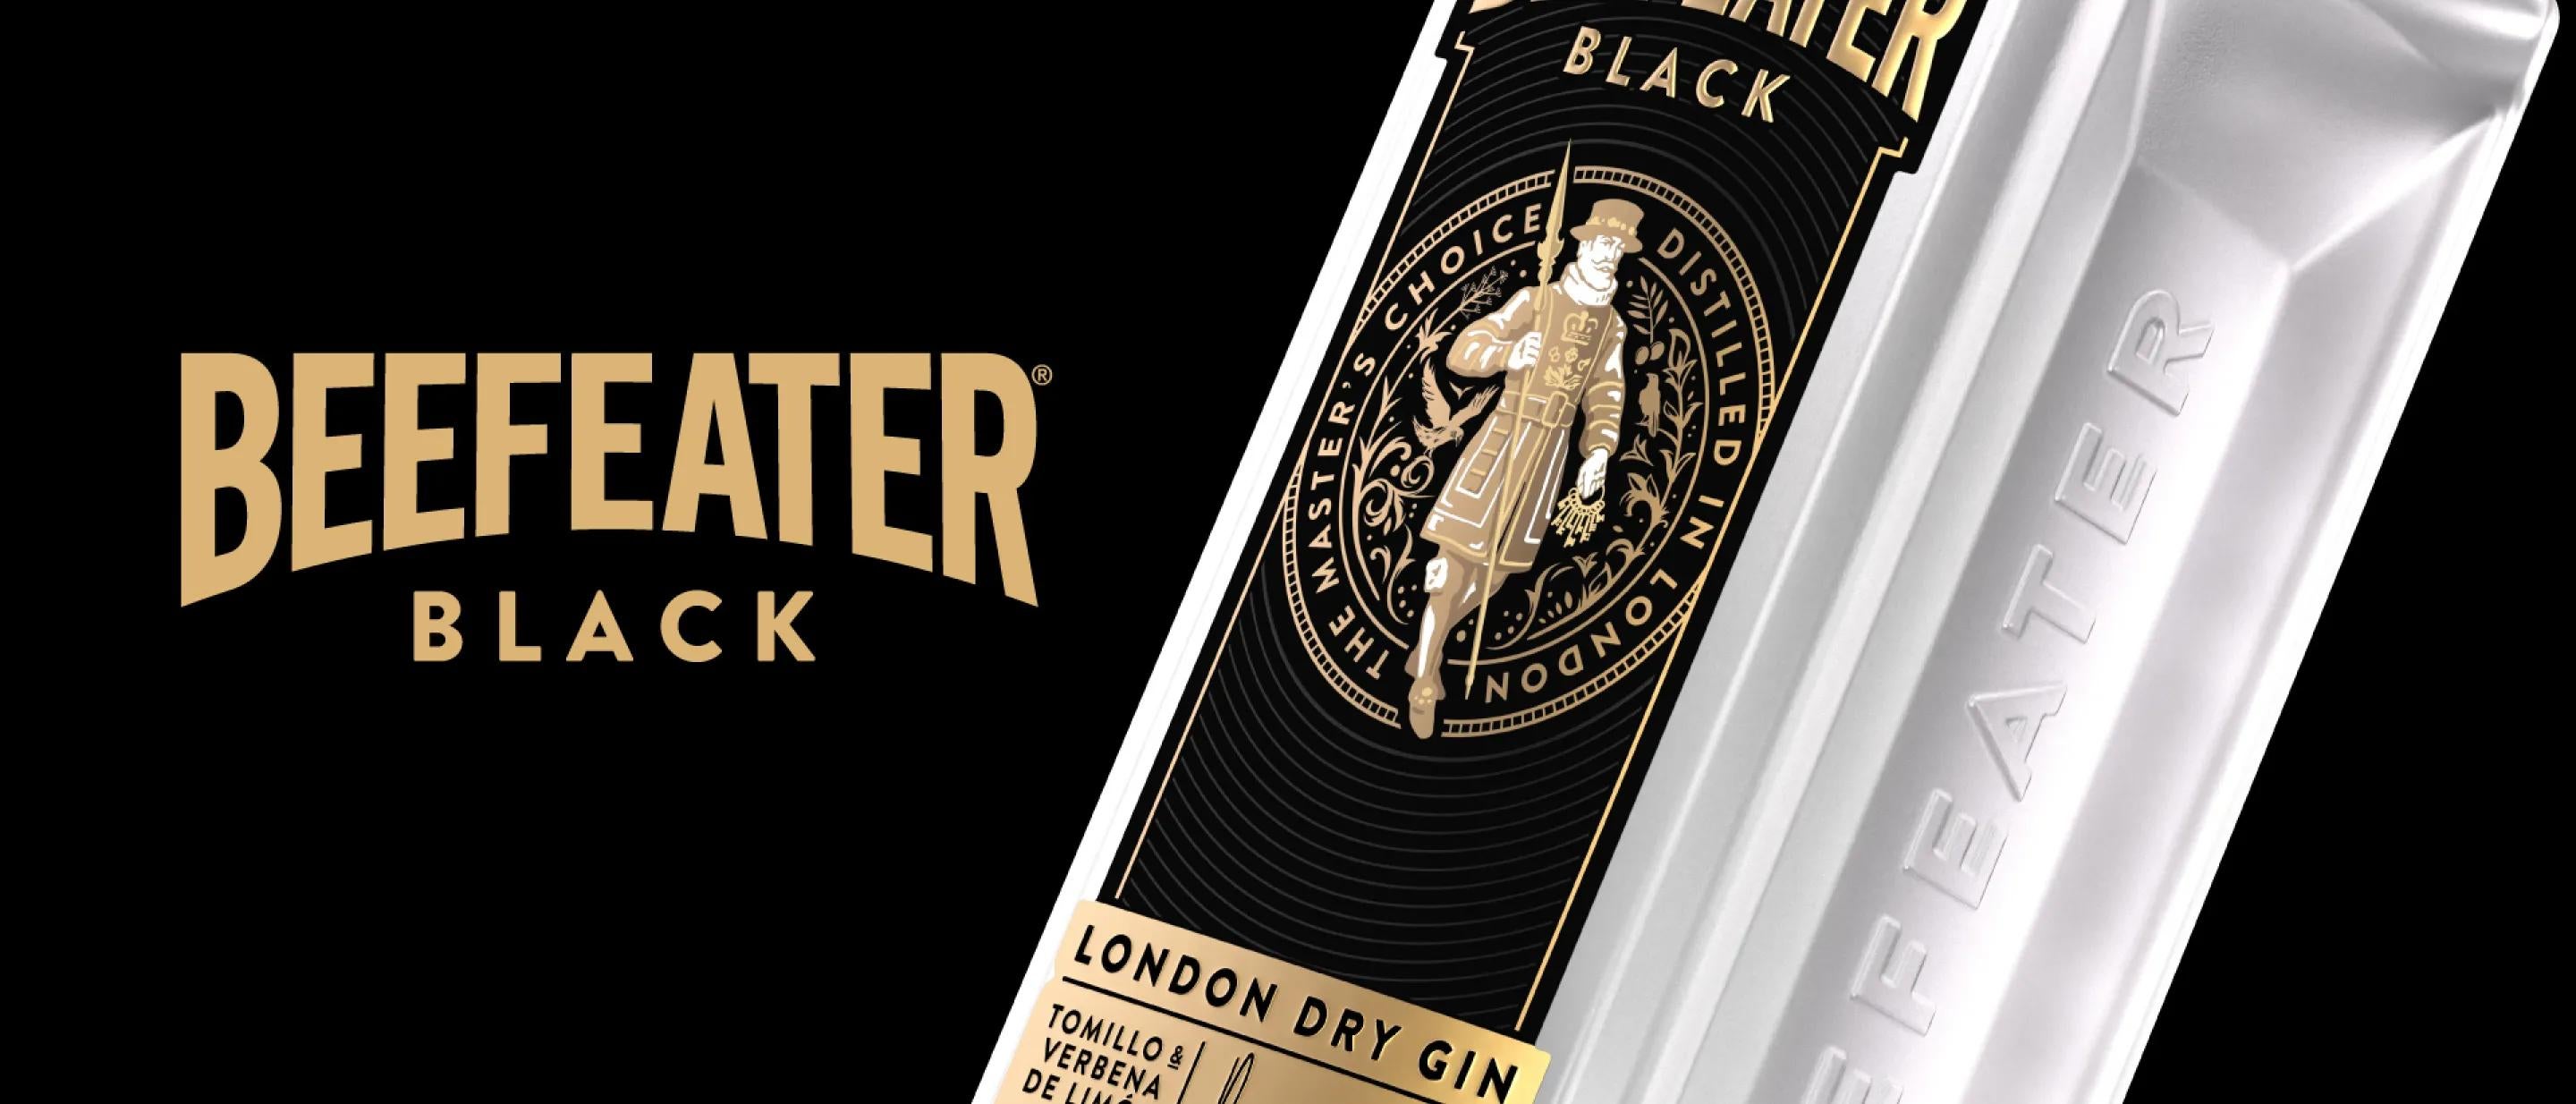 Botella Beefeater Black - Nuevo lanzamiento